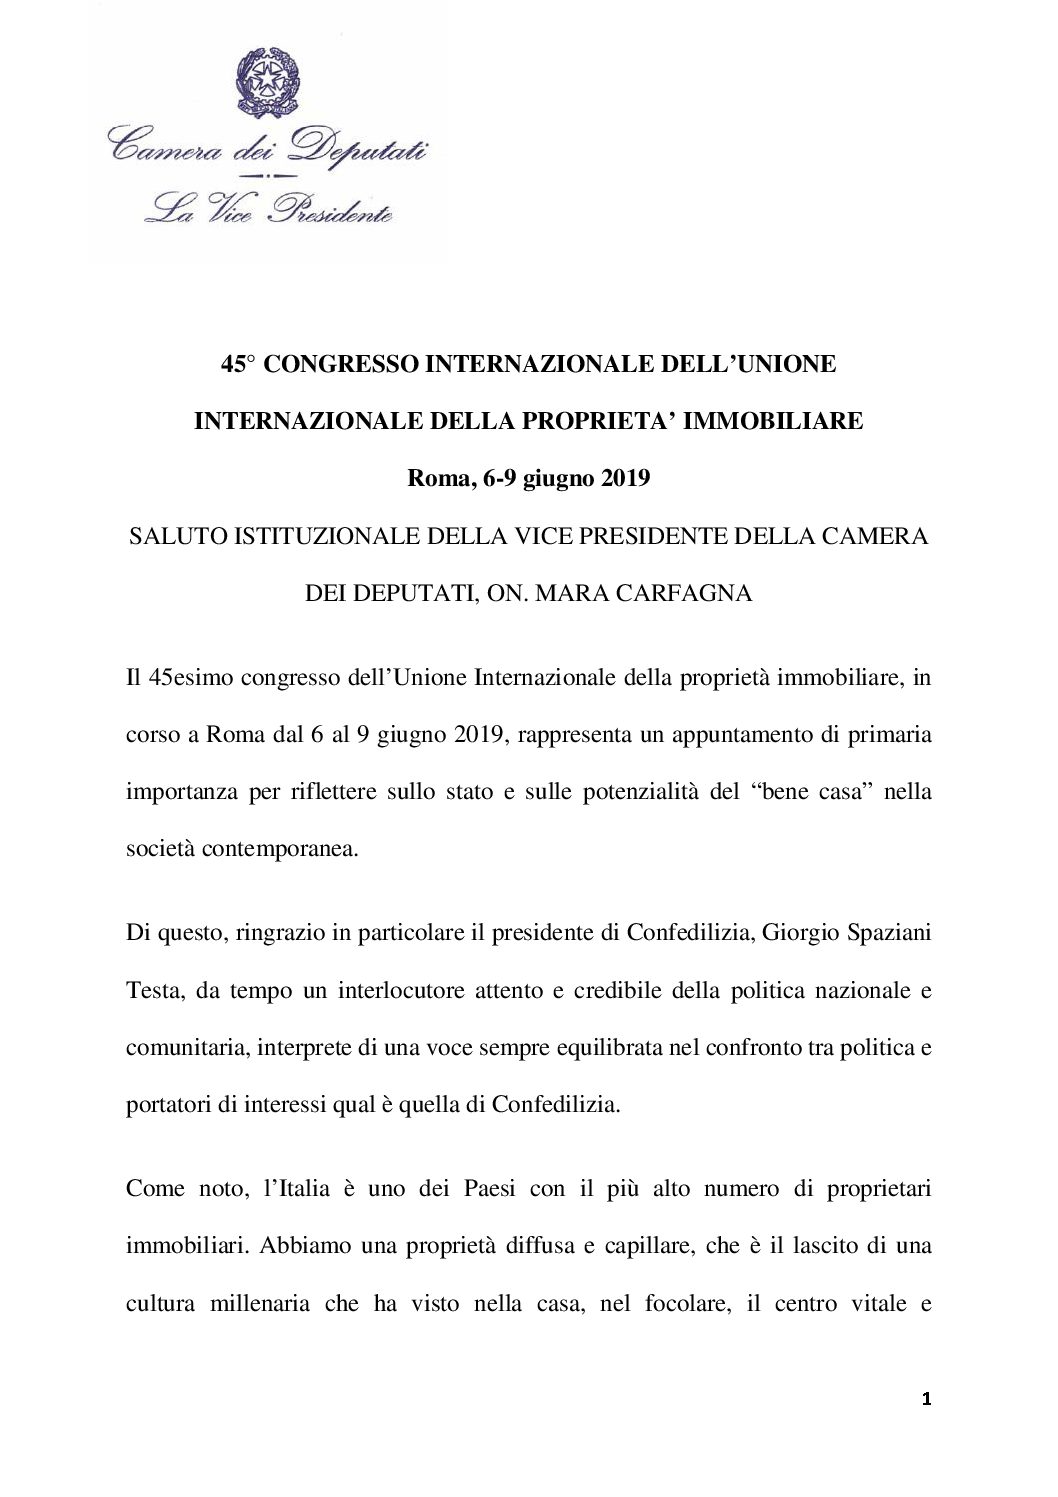 2019.06.07 – UIPI-Confedilizia_ita